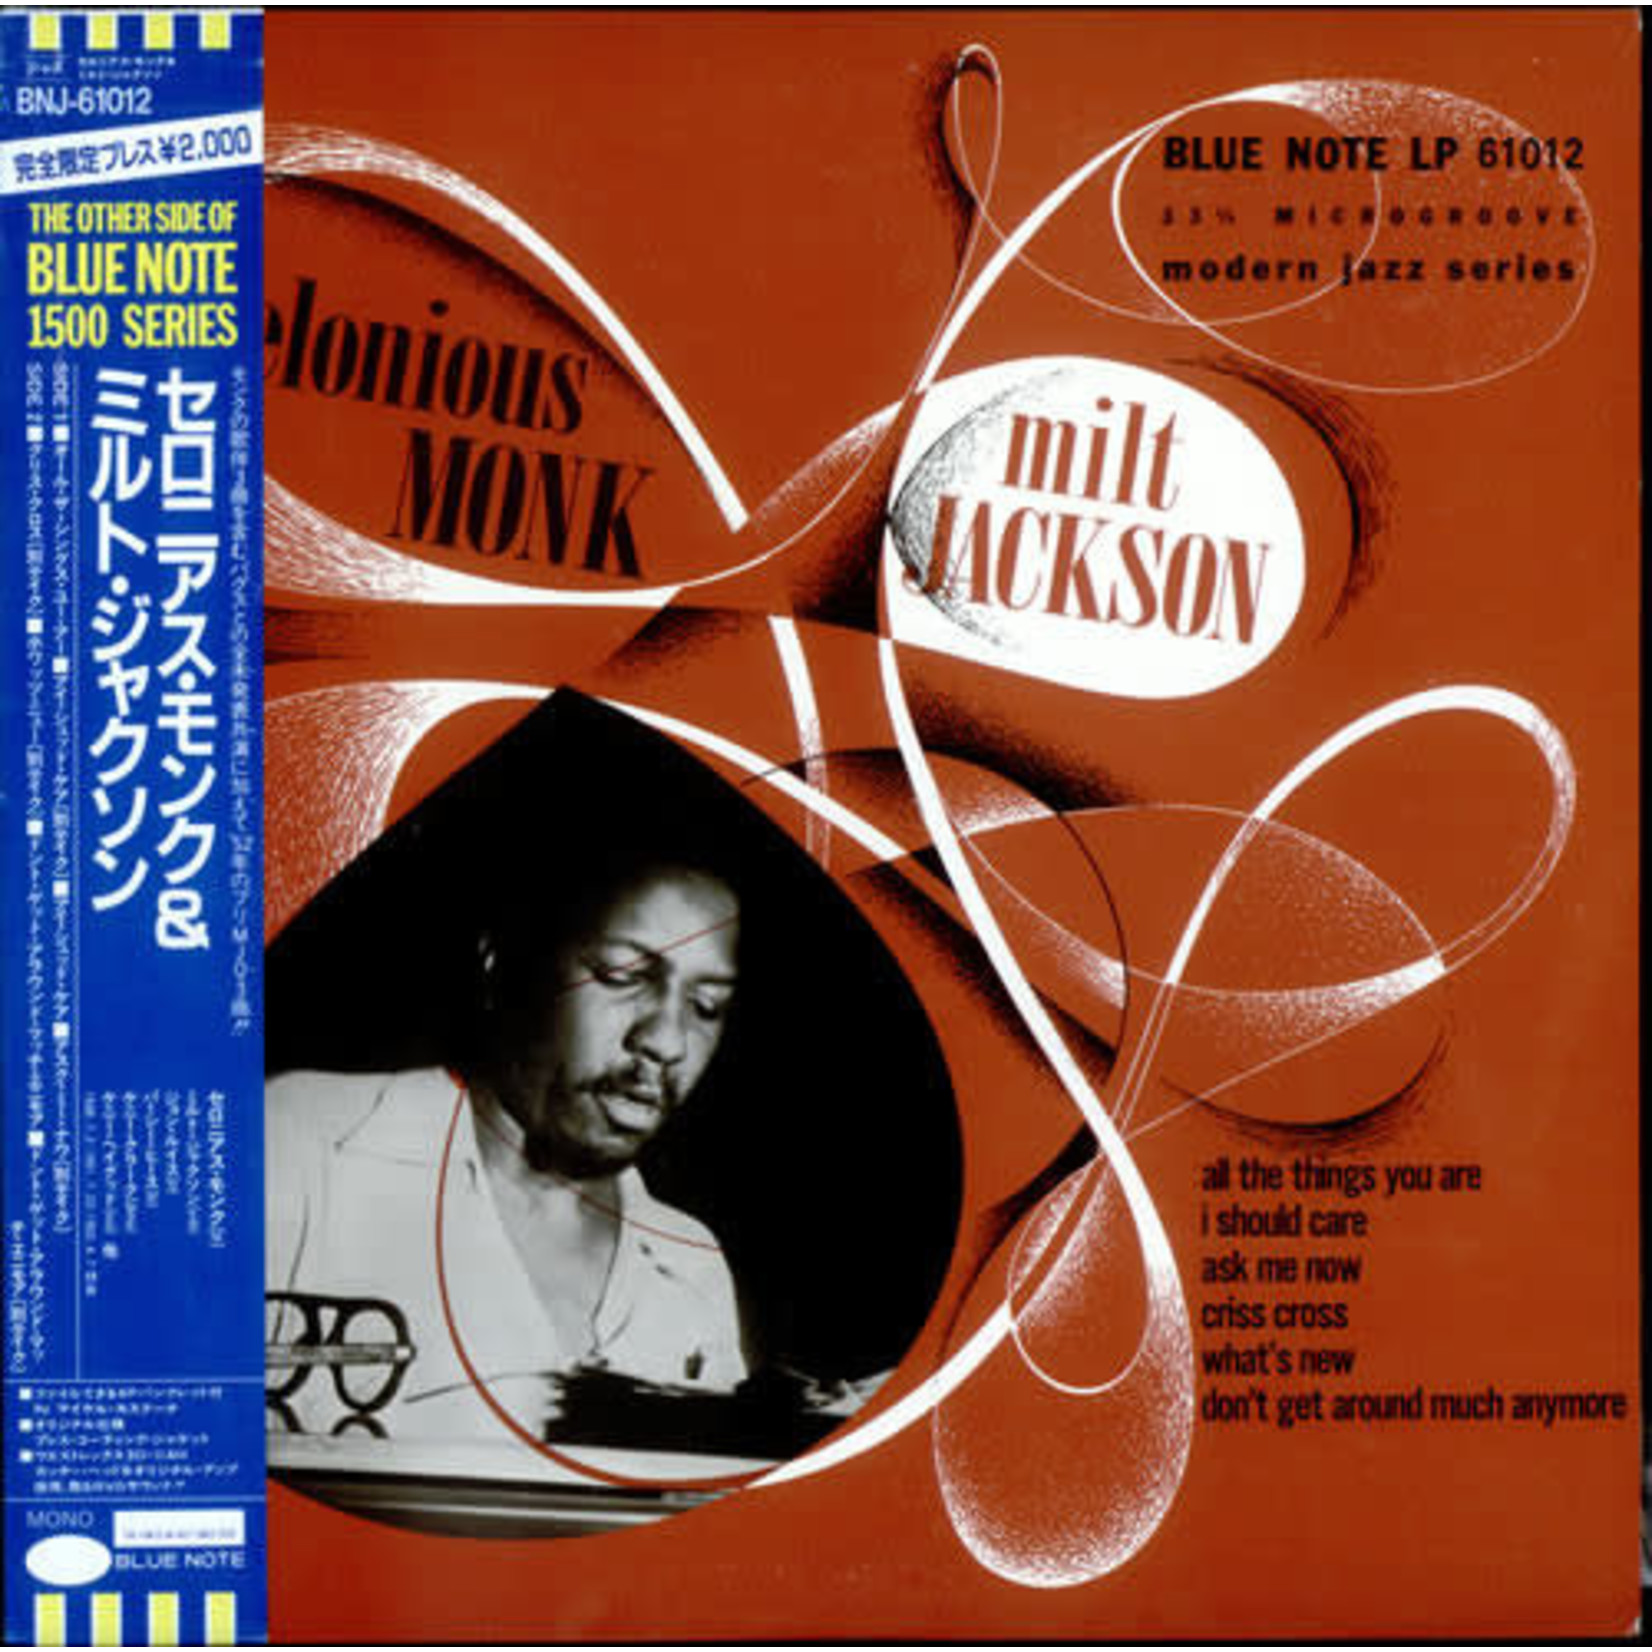 [Vintage] Monk, Thelonious: Thelonious Monk & Milt Jackson [JAPANESE VINTAGE]